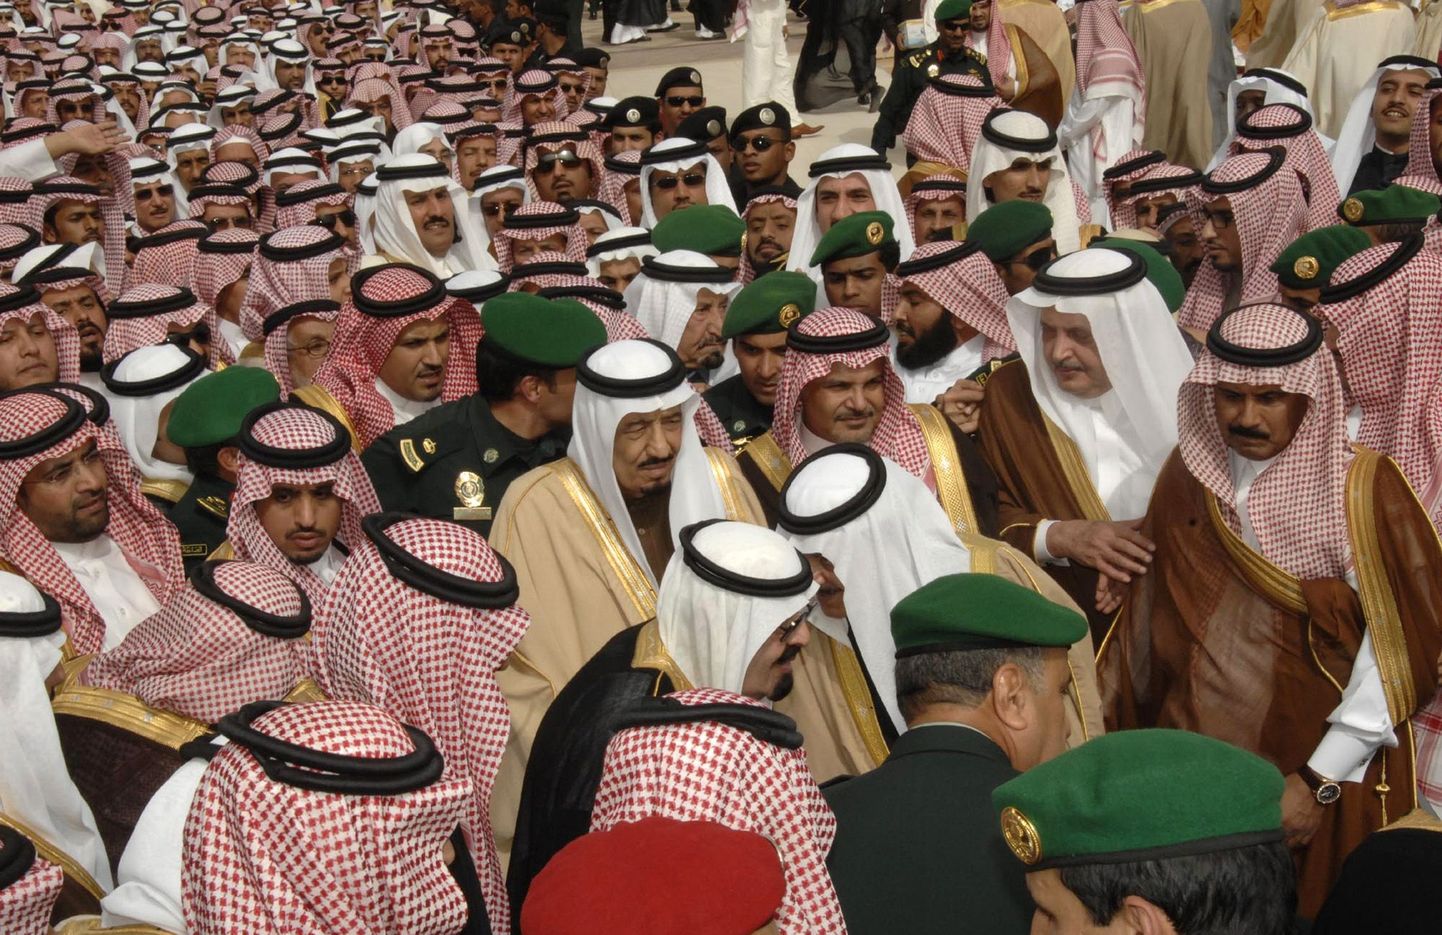 Saudi Araabiast saadeti välja kolm «liiga ilusat» meest